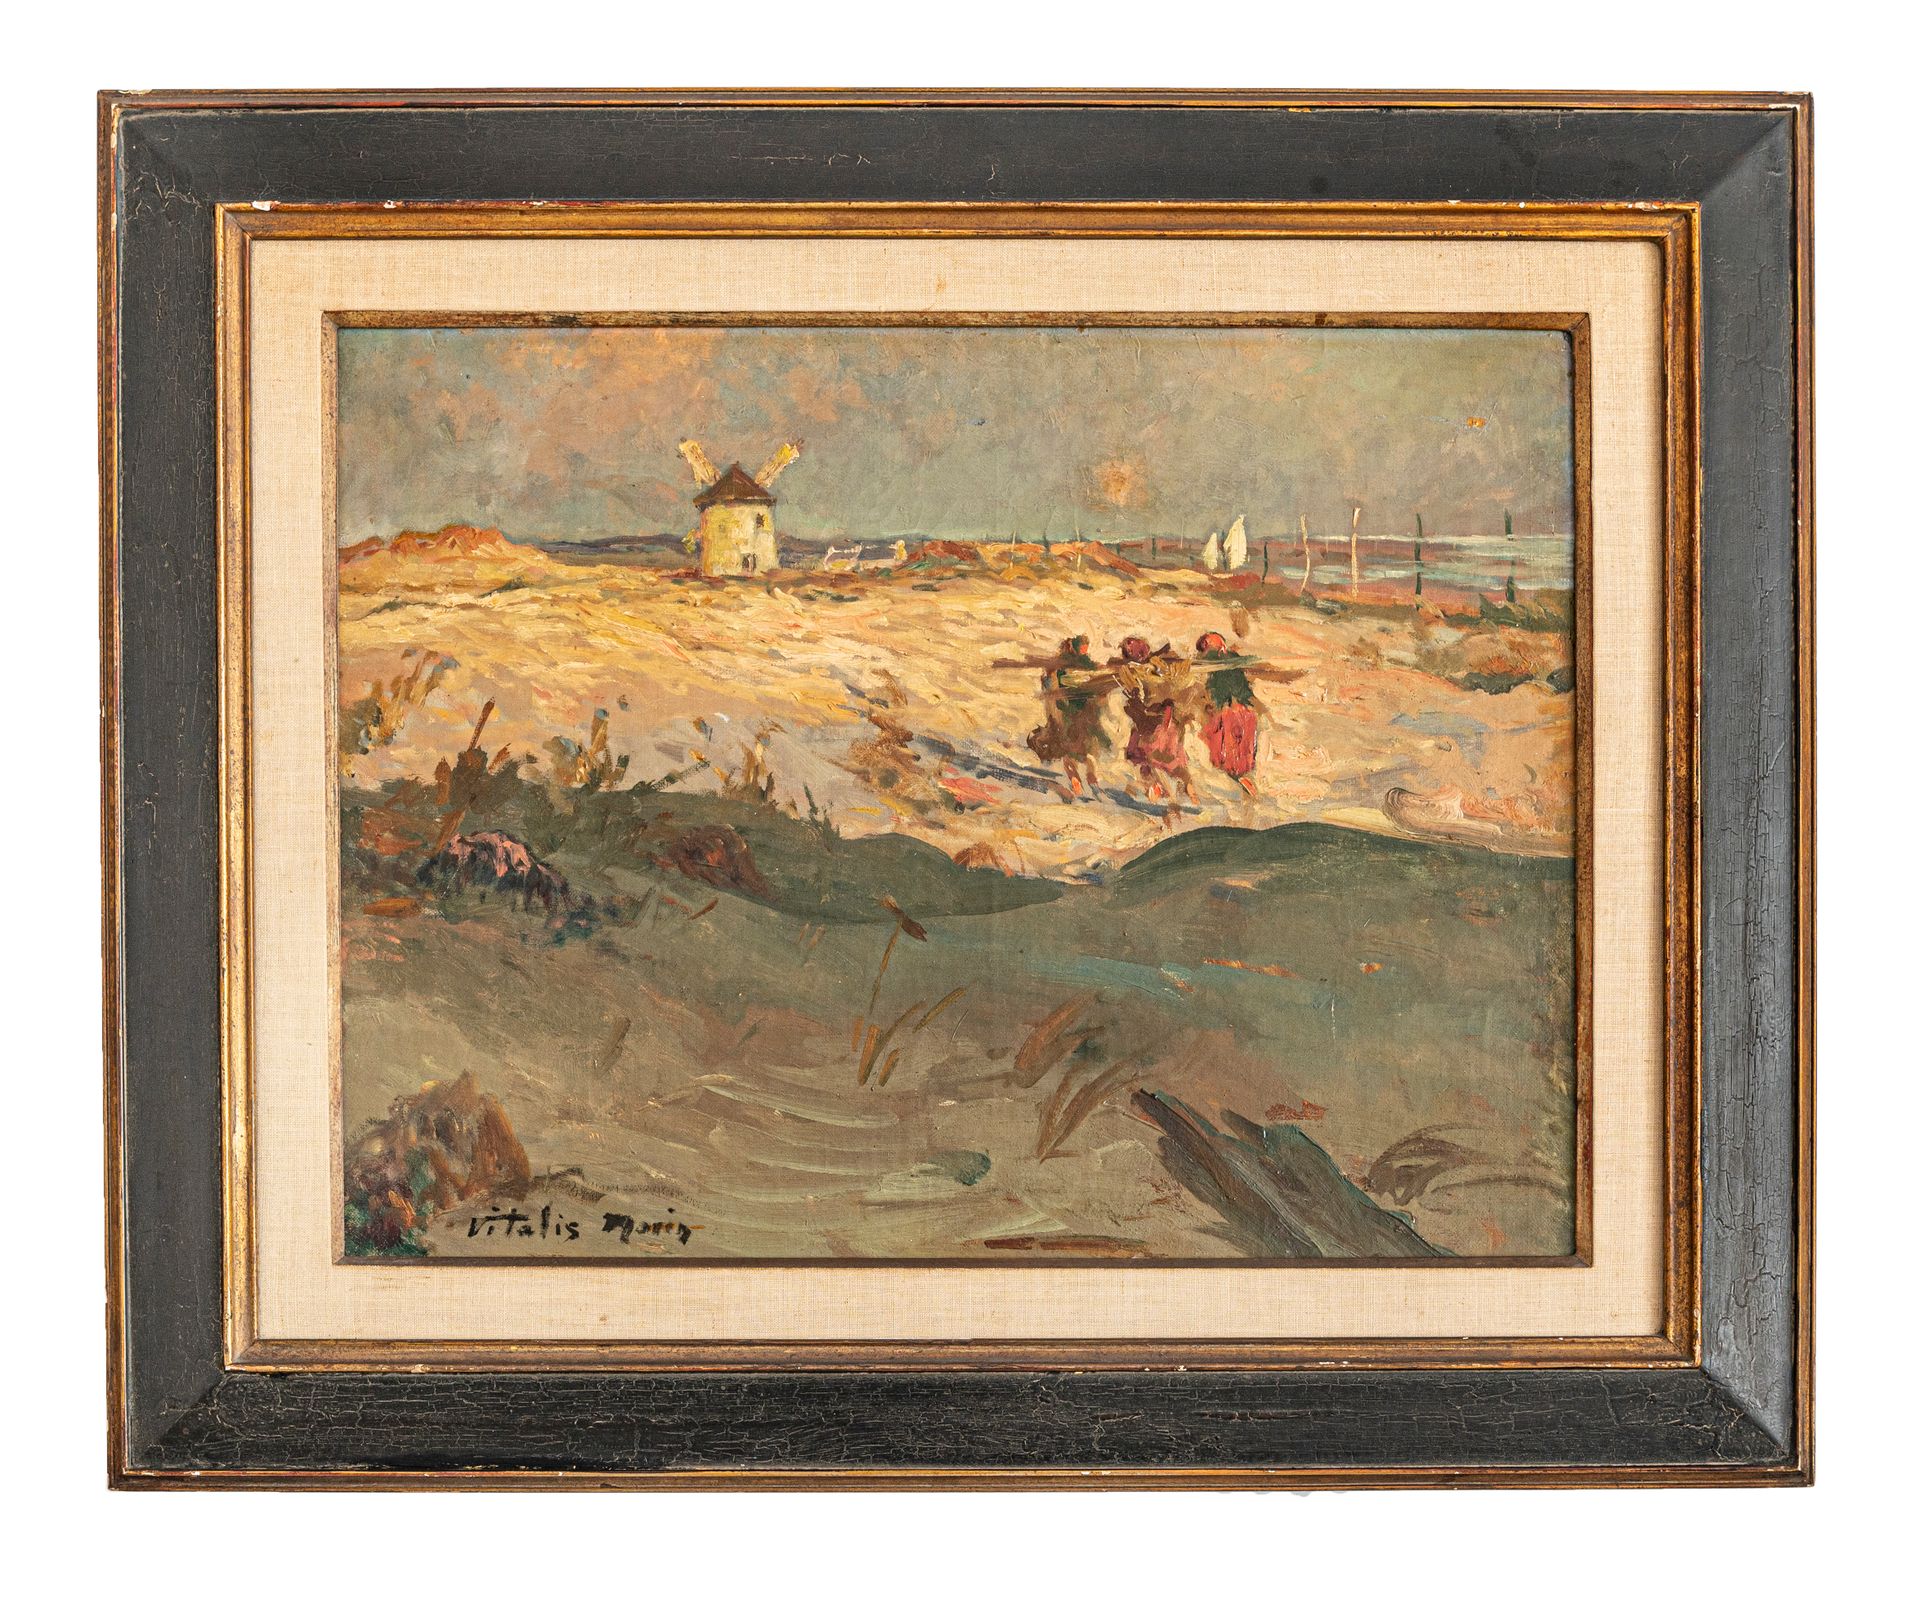 Null 维塔利斯-莫林 (1867-1936)

布列塔尼的海滩上有一个磨坊

签名的布面油画

51 x 66厘米

有框



出处：私人收藏